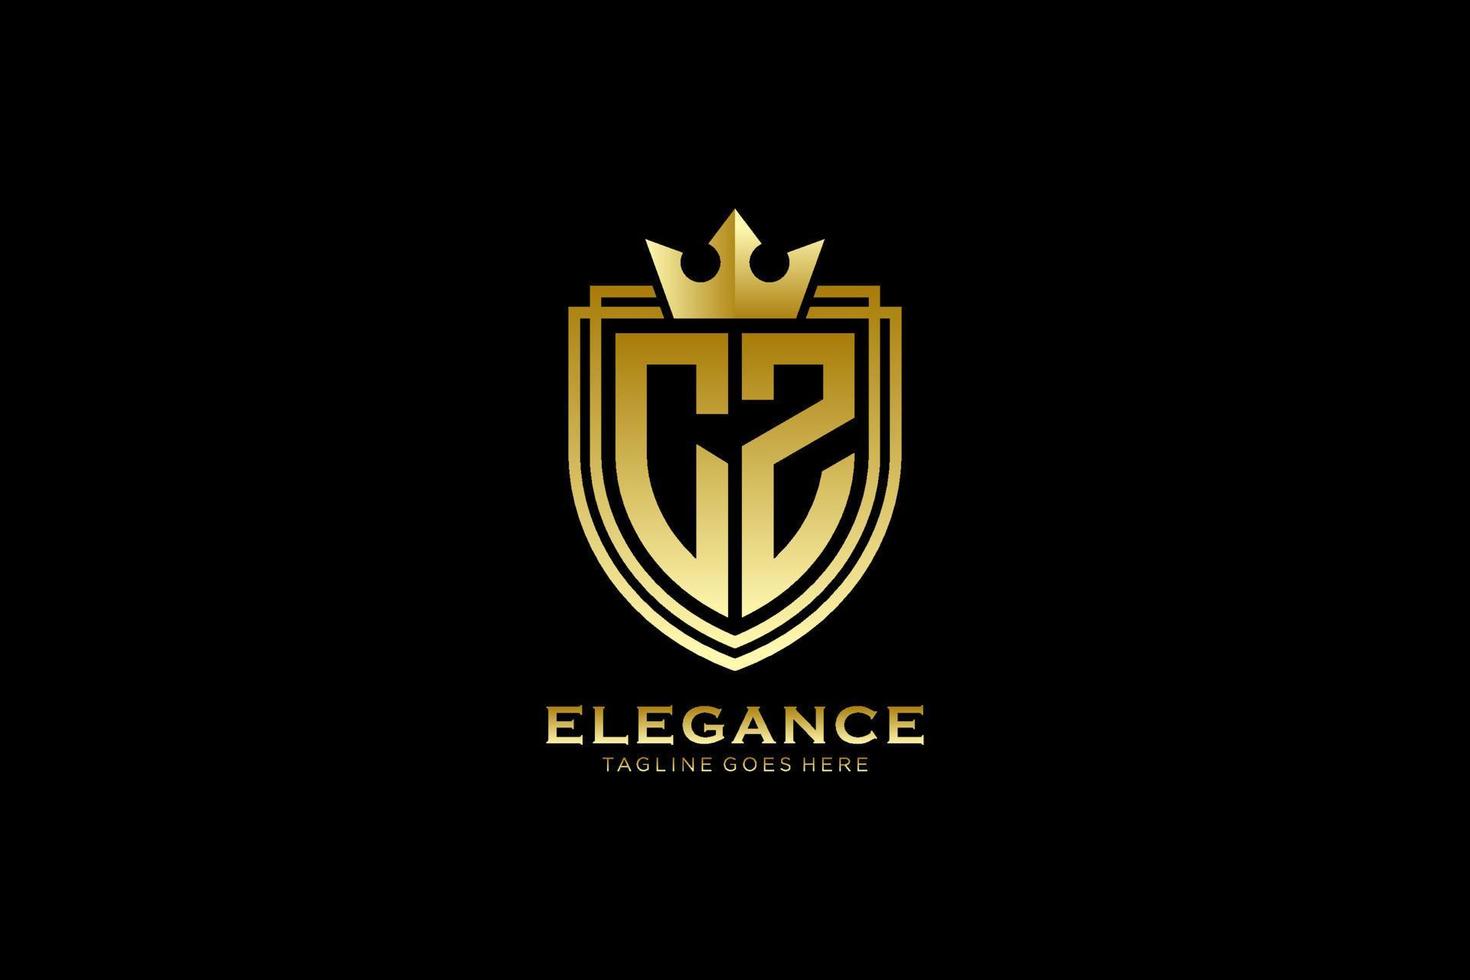 logo monogramme de luxe élégant initial cz ou modèle de badge avec volutes et couronne royale - parfait pour les projets de marque de luxe vecteur